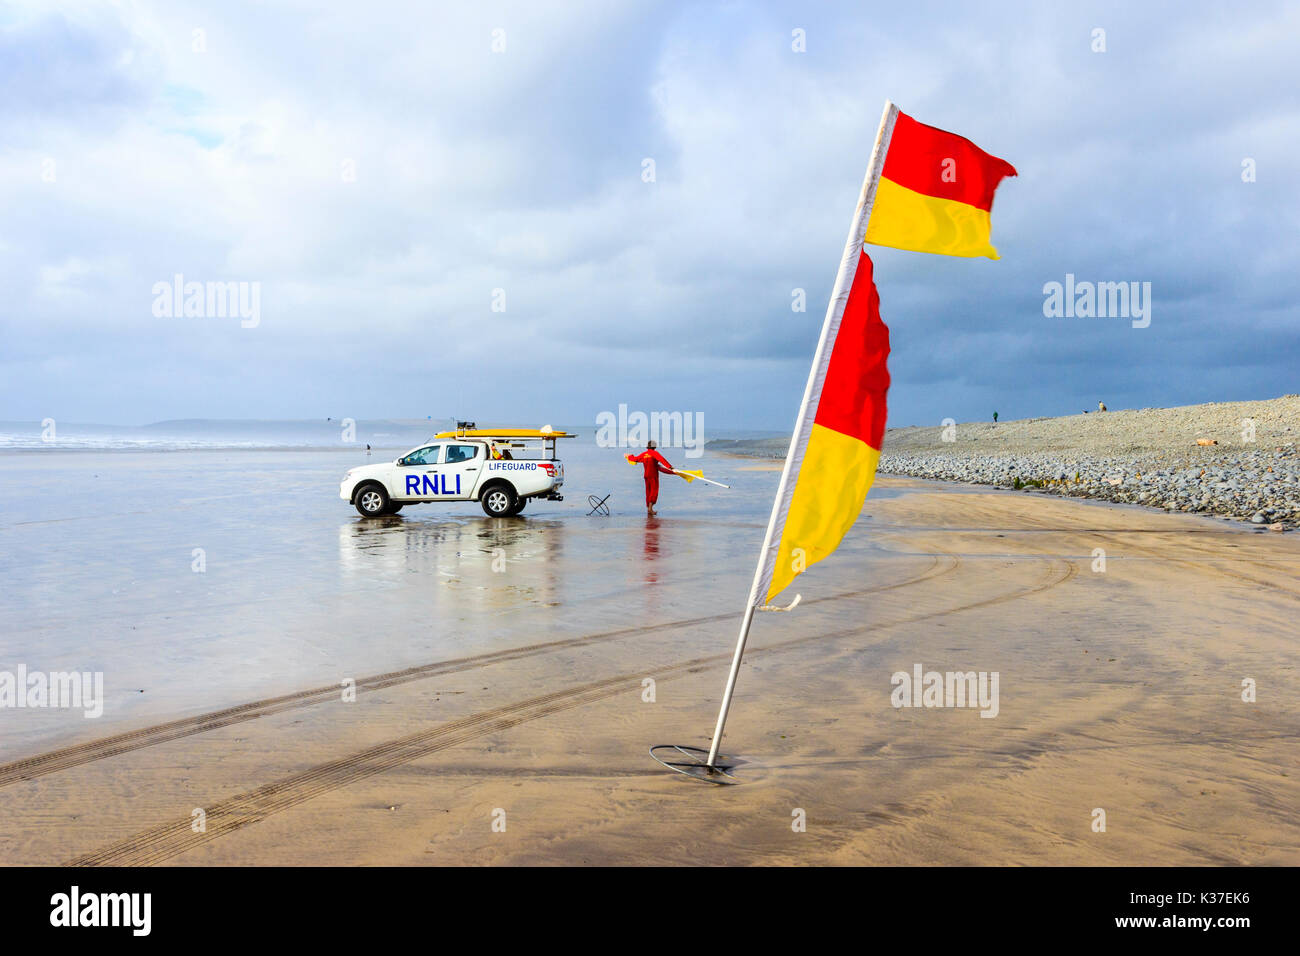 Rosso e giallo di avvertimento e bandiera RNLI bagnino di salvataggio con il veicolo sulla spiaggia sabbiosa di Condino Con la bassa marea su un nuvoloso e ventoso giorno di estate Foto Stock